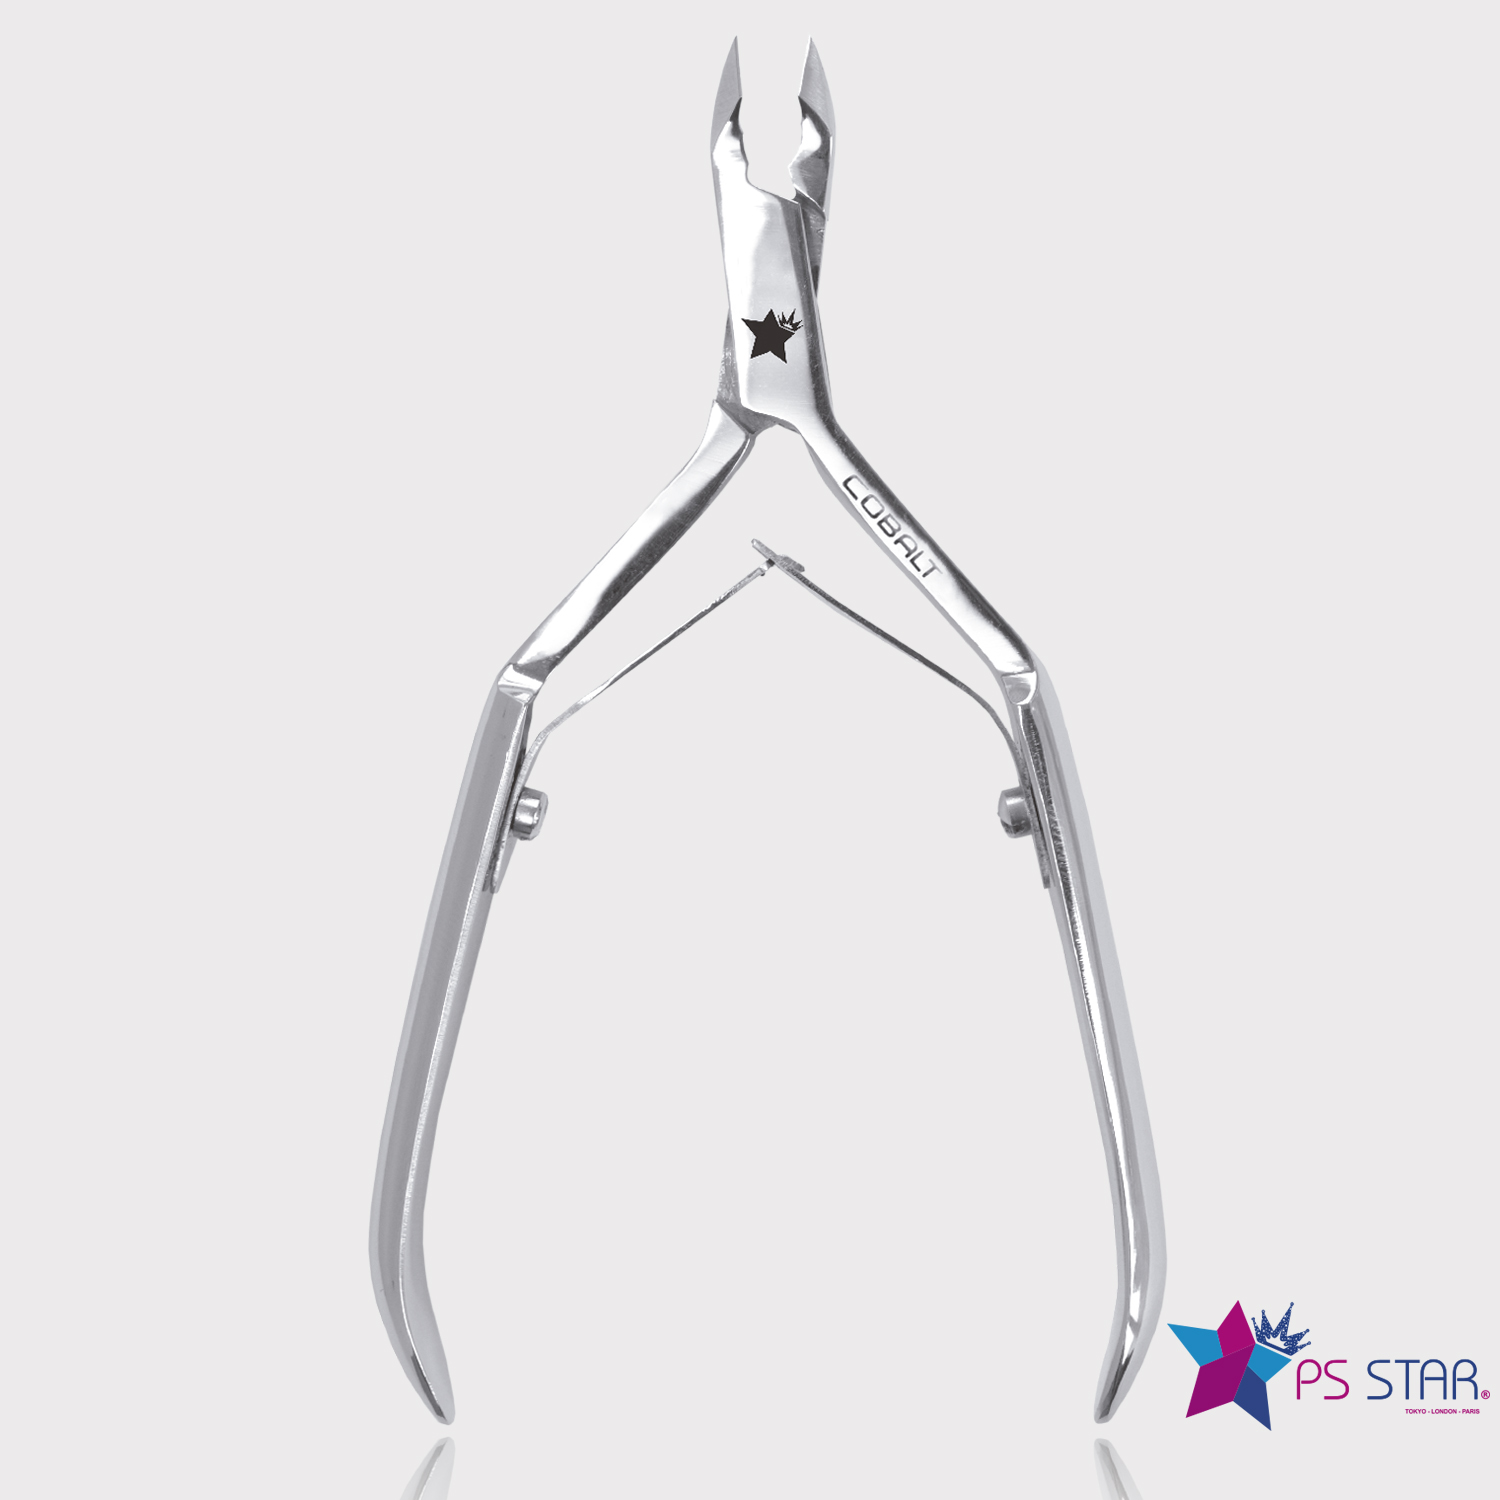 PS Star Cuticle Scissors 914p Pro 18mm Cobalt Ergonomic